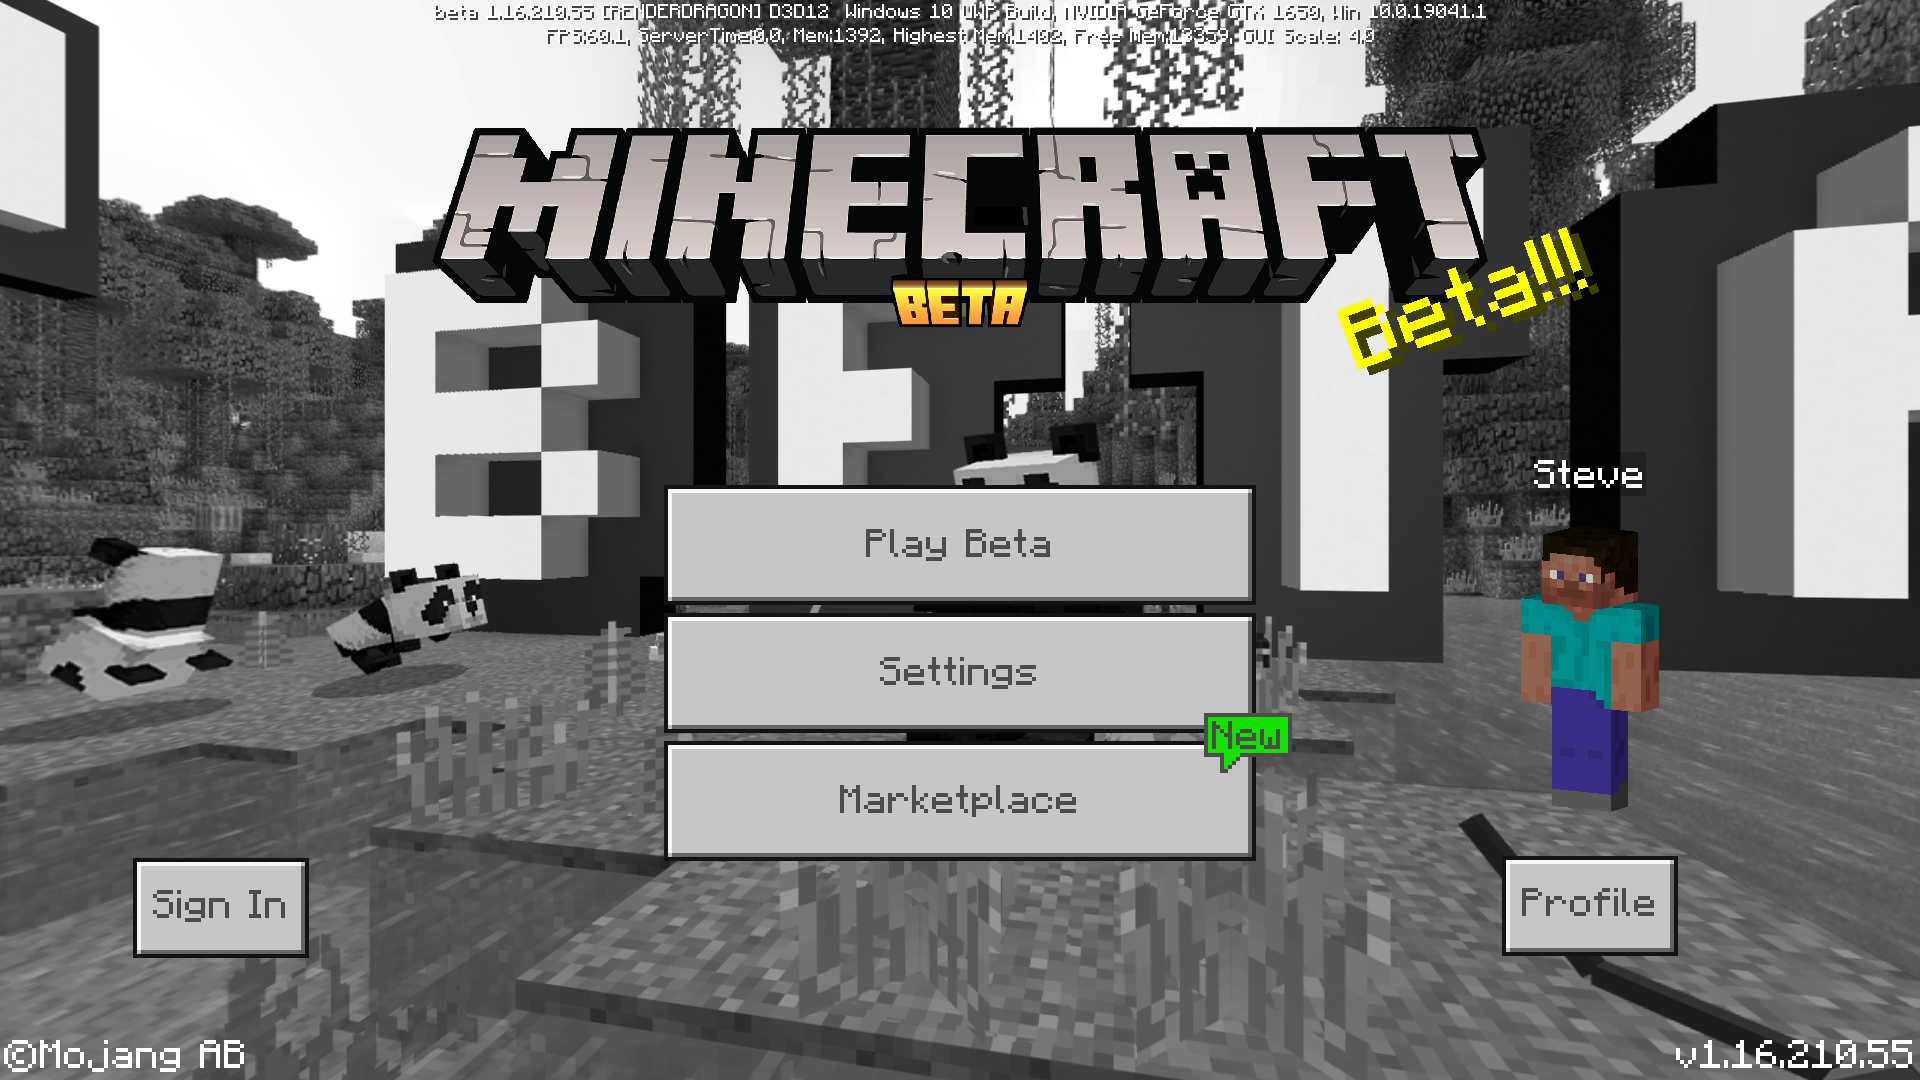 How to download Minecraft 1.16.220 bedrock update